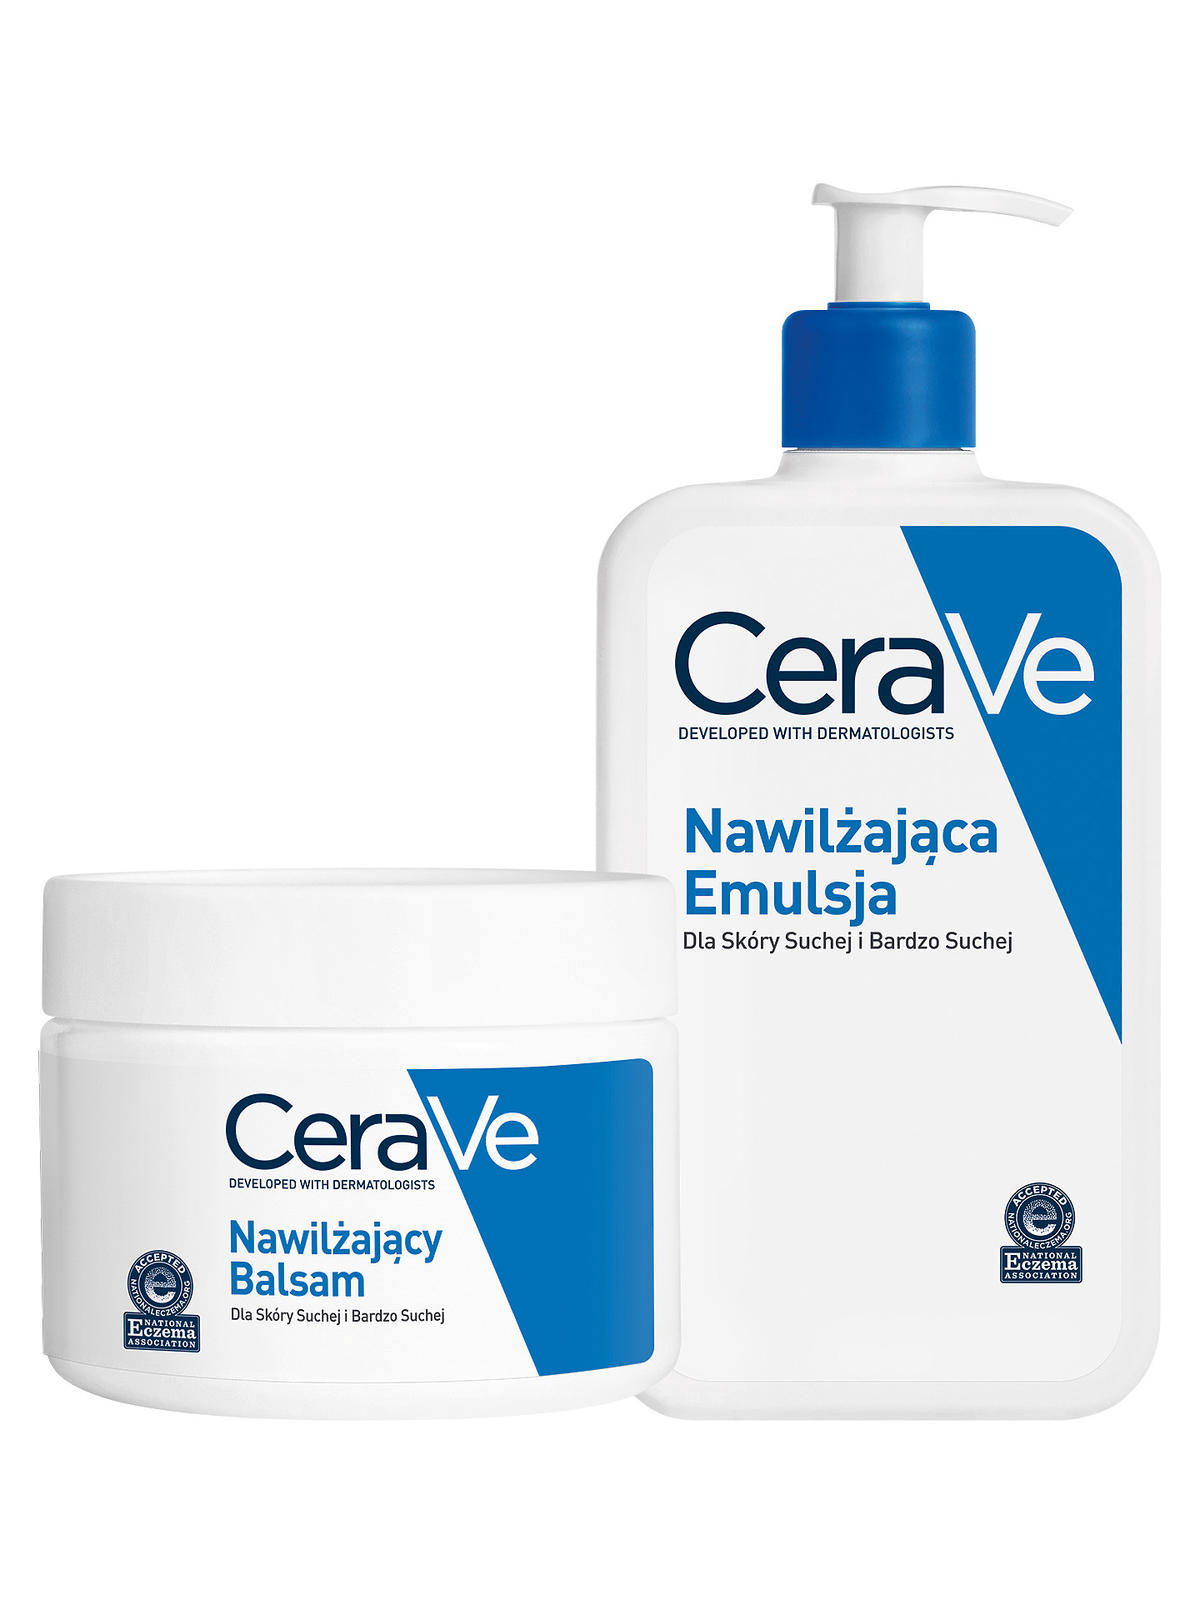 CeraVe – balsam oraz emulsja